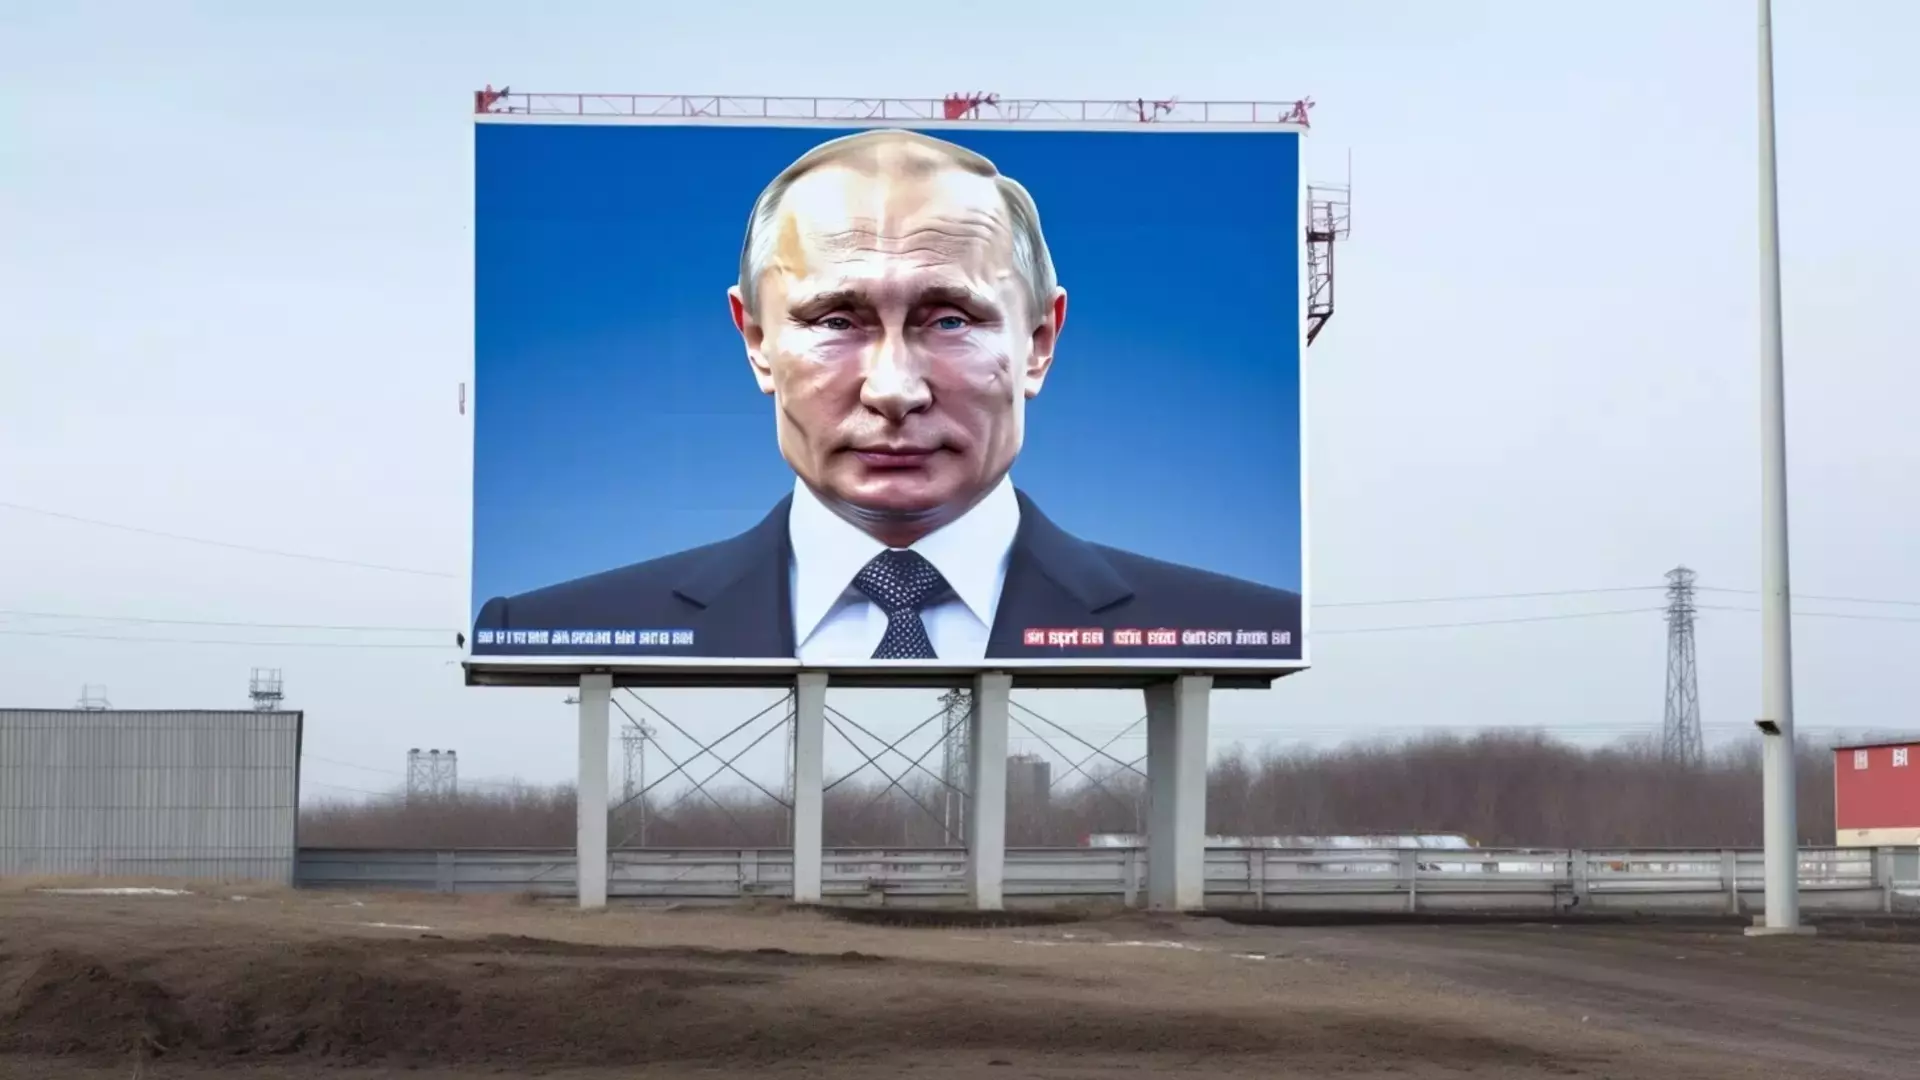 В Свердловской области активно обсуждается предстоящий визит Путина